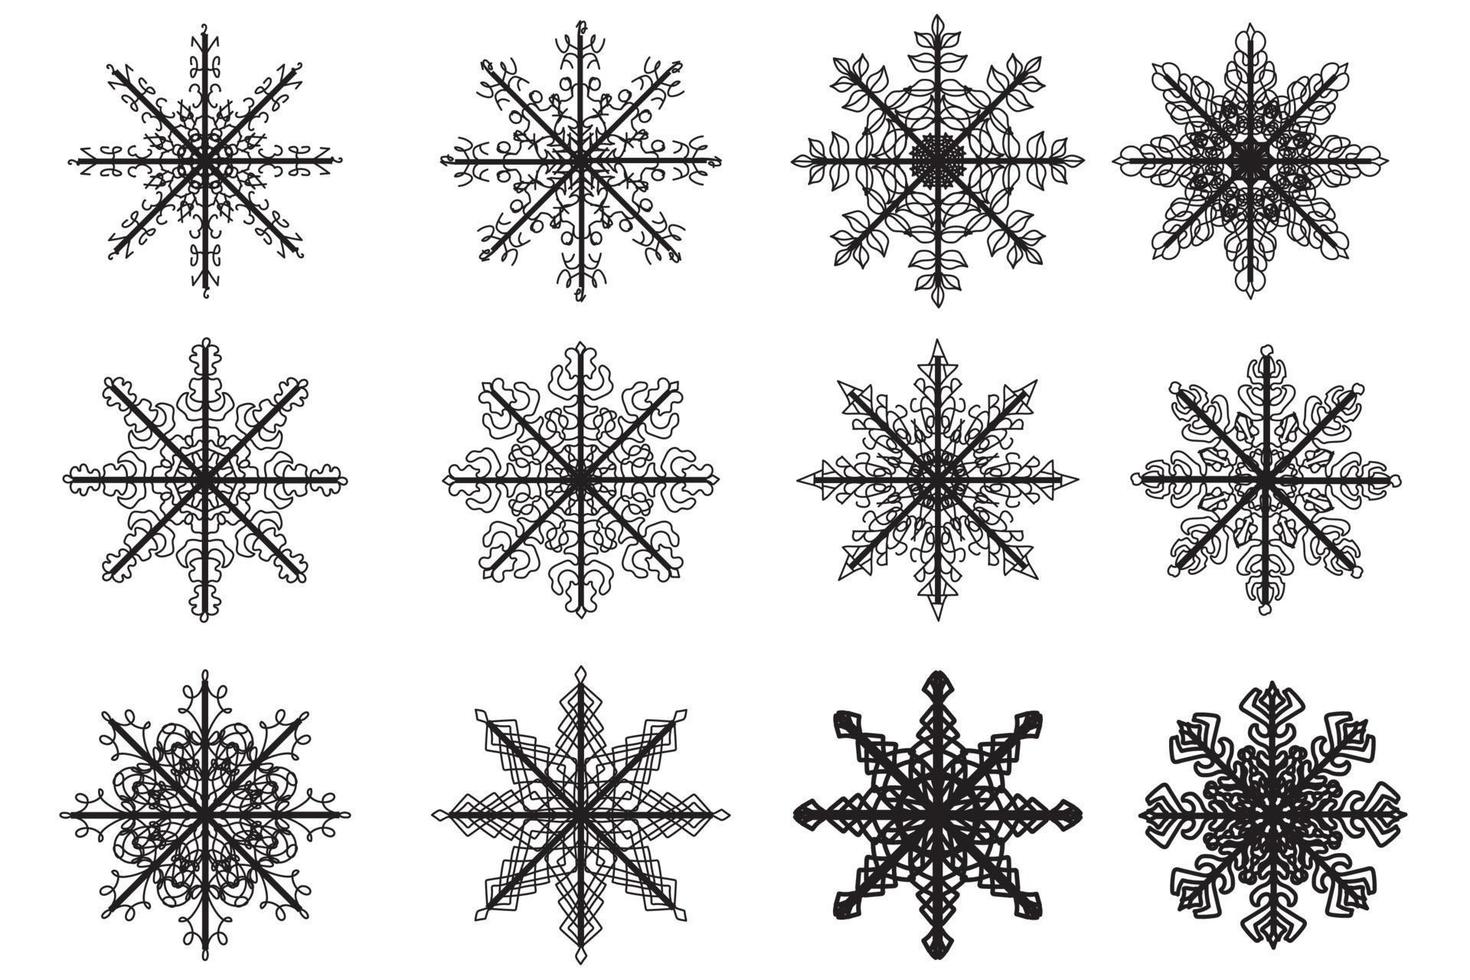 de bild visar olika snöflingor målad i svart översikt, avsedd för ny år, vykort, Kläder och tyg utskrift och Övrig tillfällen vektor